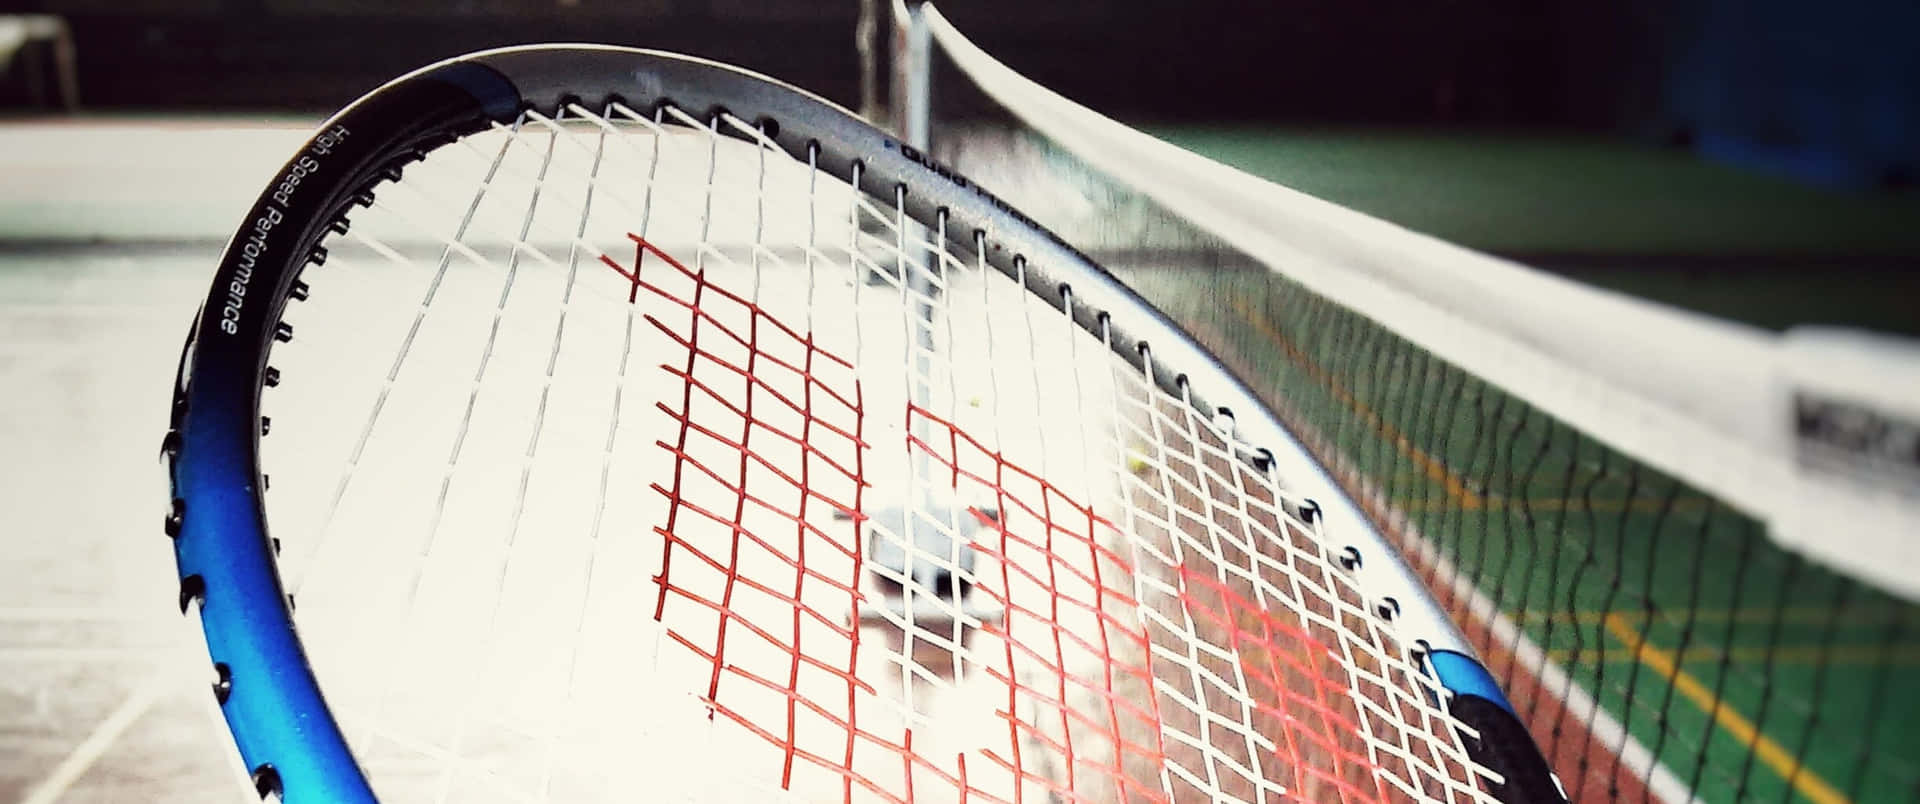 Världsmästarespelar Badminton Vid 3440x1440p Upplösning.